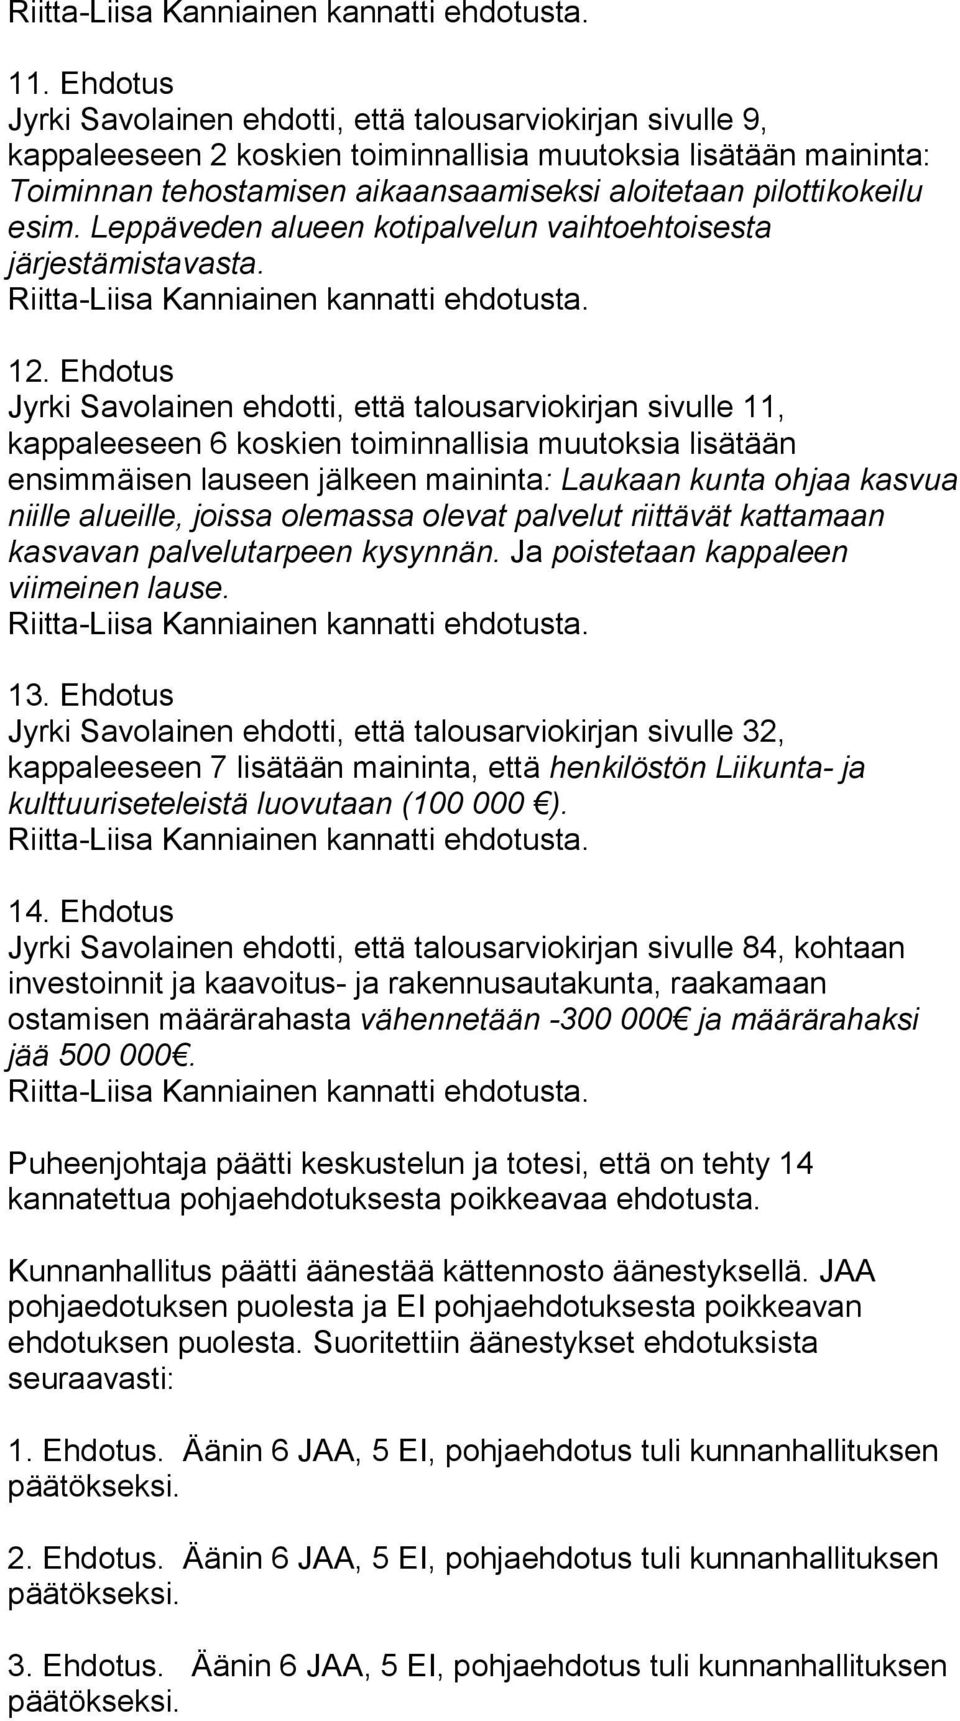 Ehdotus Jyrki Savolainen ehdotti, että talousarviokirjan sivulle 11, kappaleeseen 6 koskien toiminnallisia muutoksia lisätään ensimmäisen lauseen jälkeen maininta: Laukaan kunta ohjaa kasvua niille